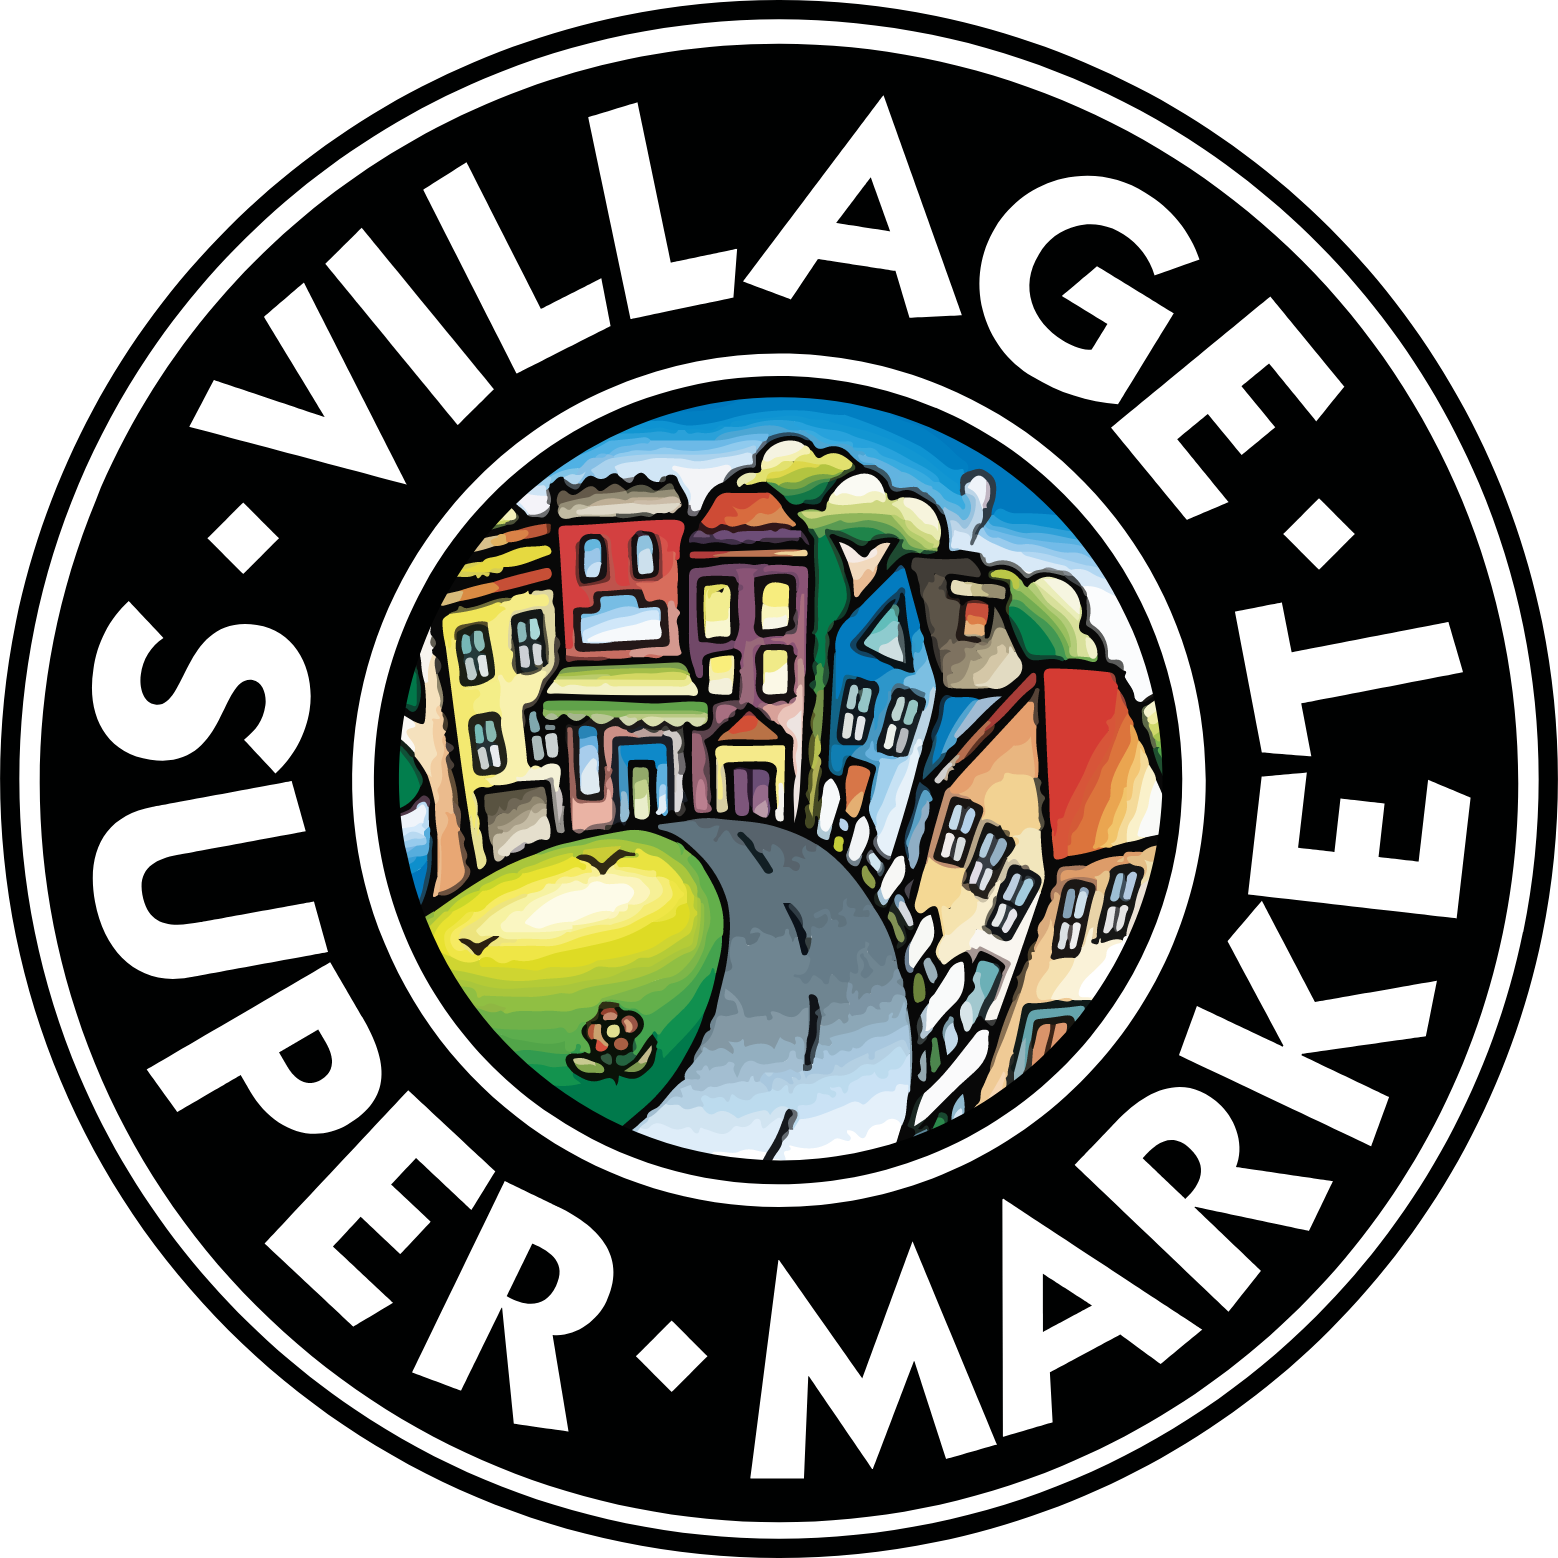 Village Super Market logo (PNG transparent)